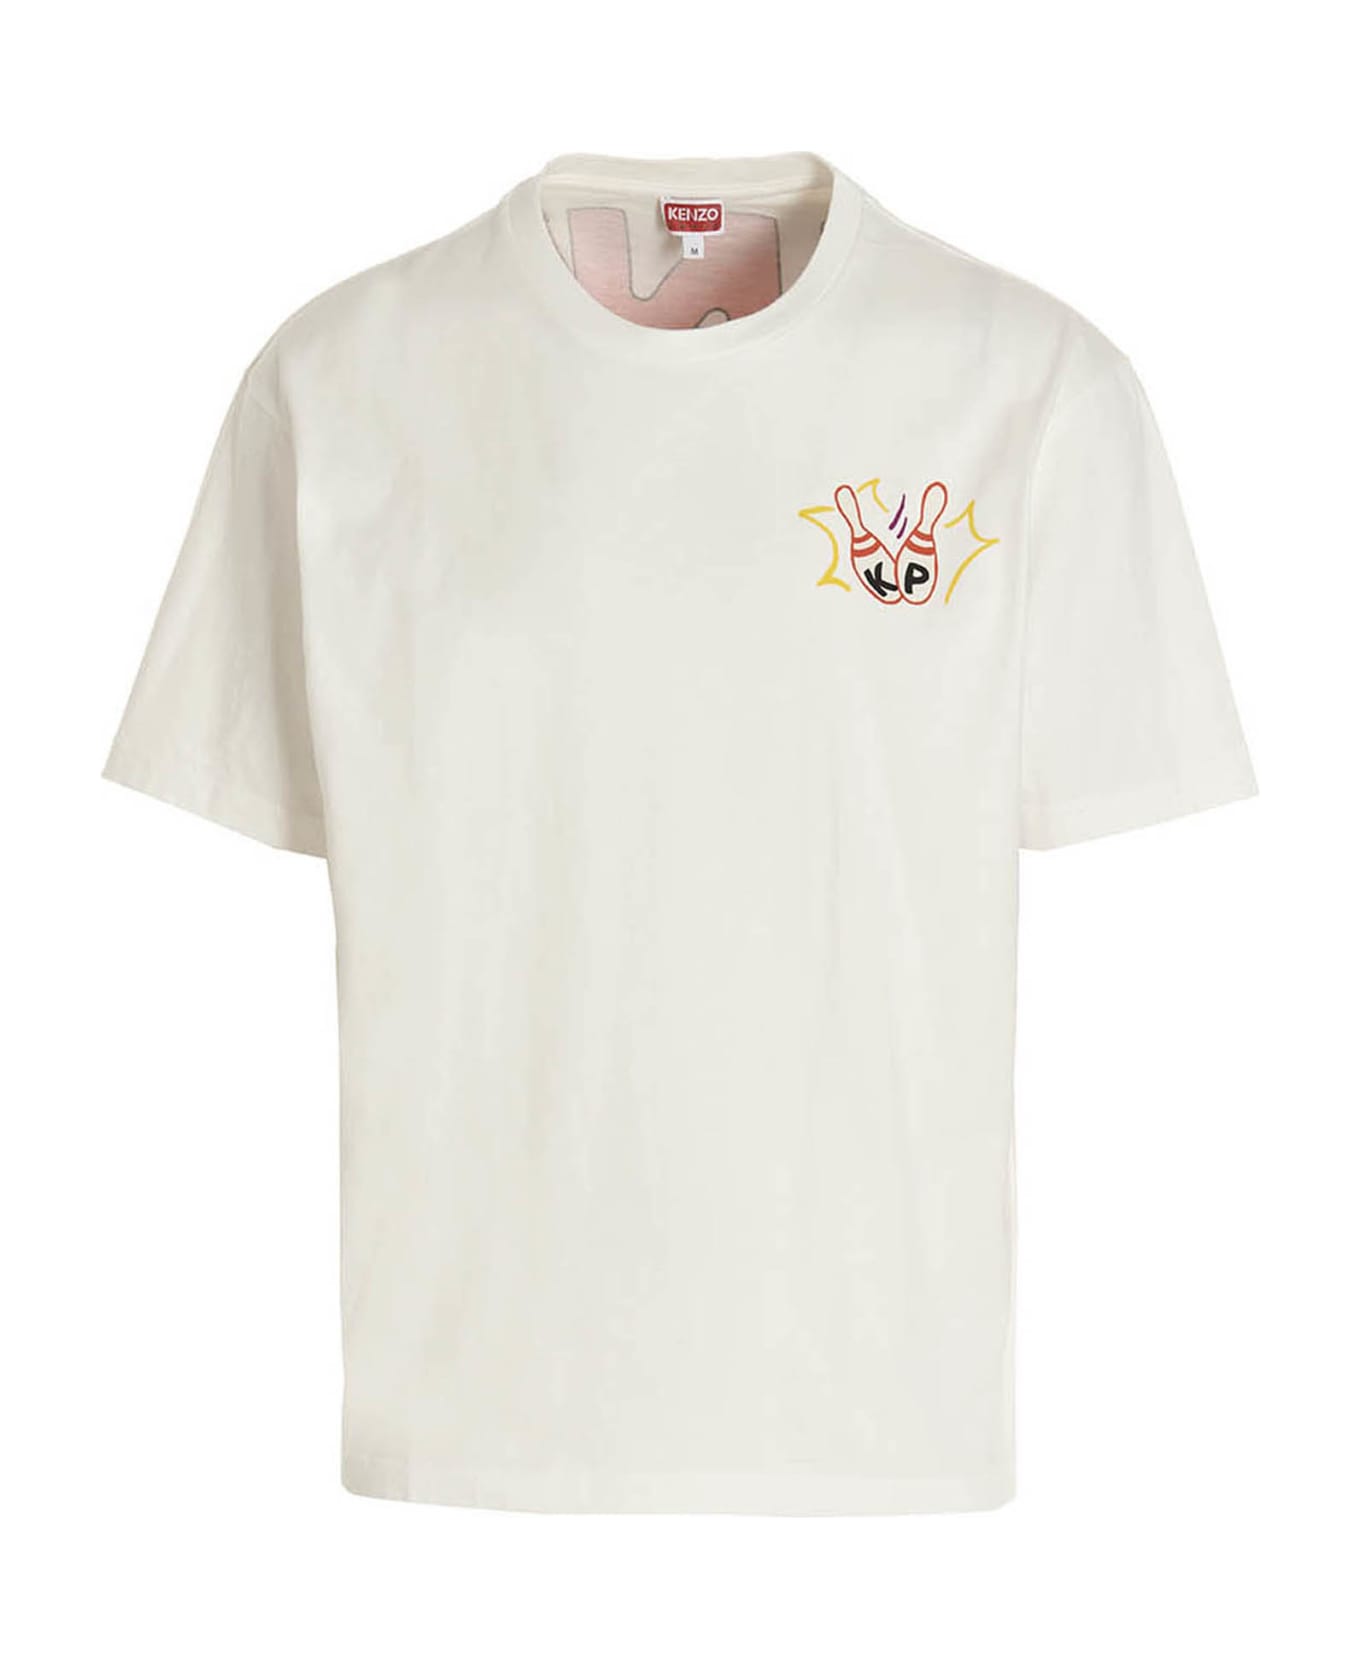 Kenzo Bowling Team T-shirt - WHITE シャツ